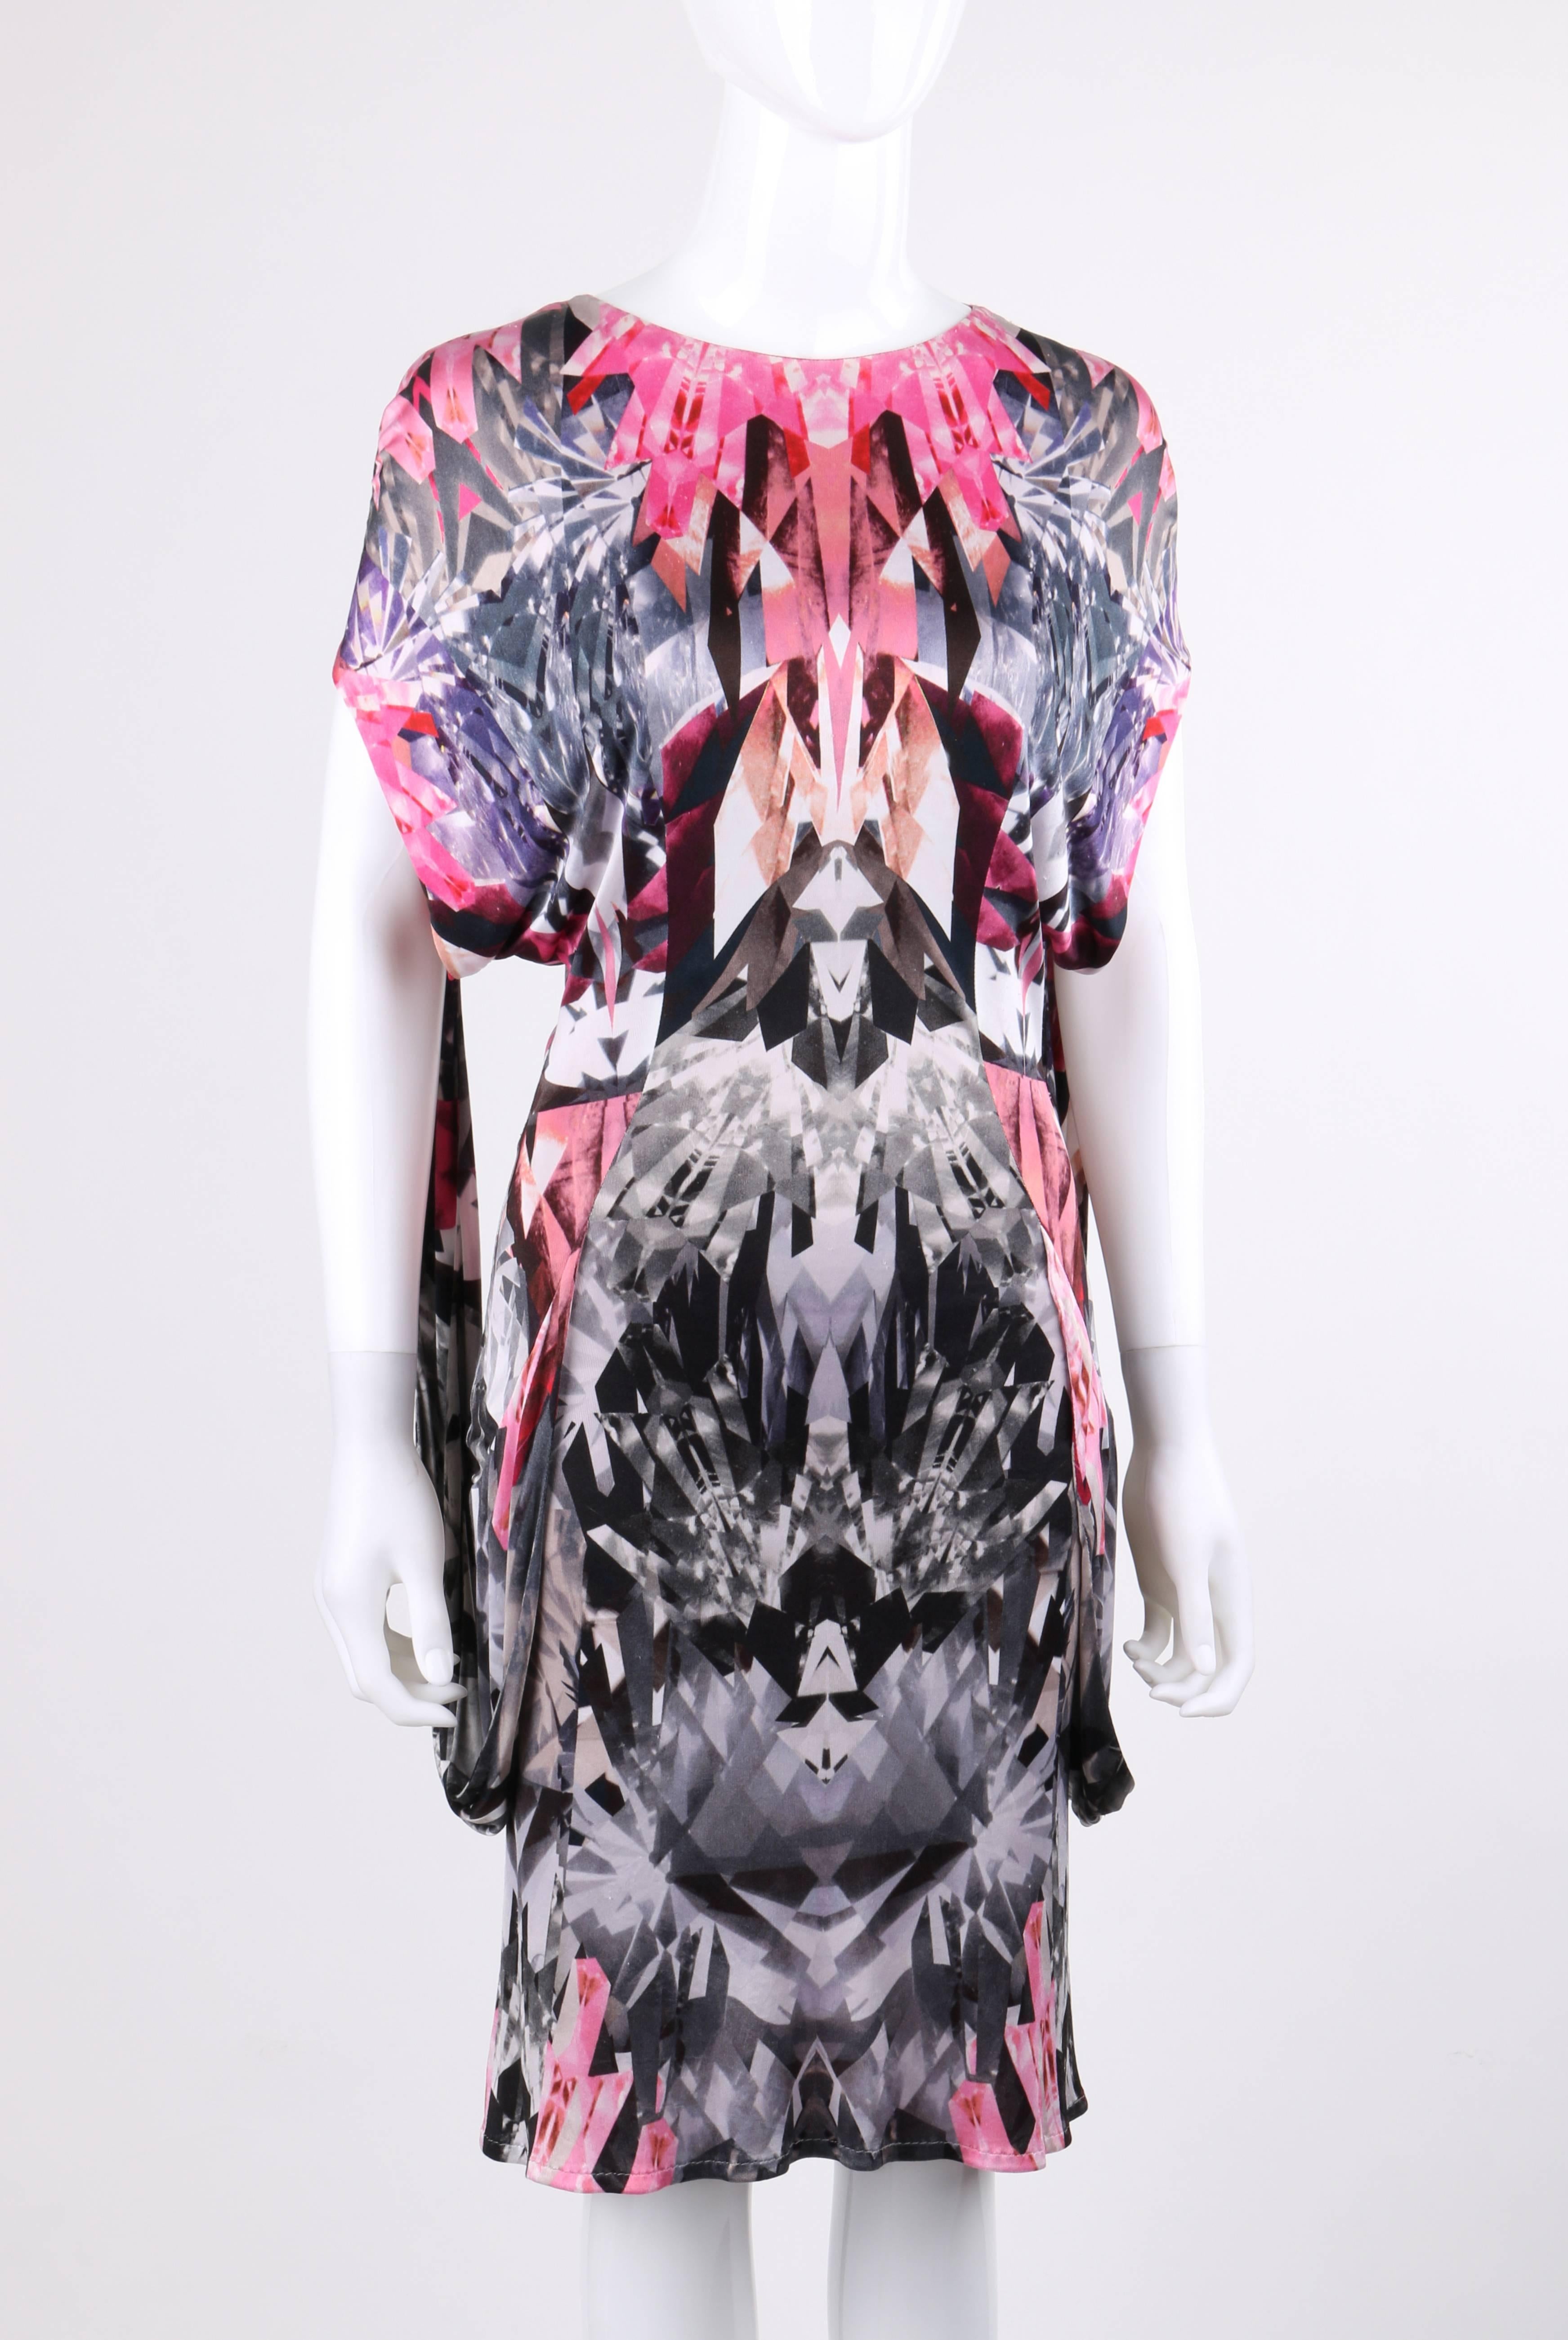 Alexander McQueen Spring/Summer 2009 pink crystal kaleidoscope knit shift dress. From Alexander McQueen's 